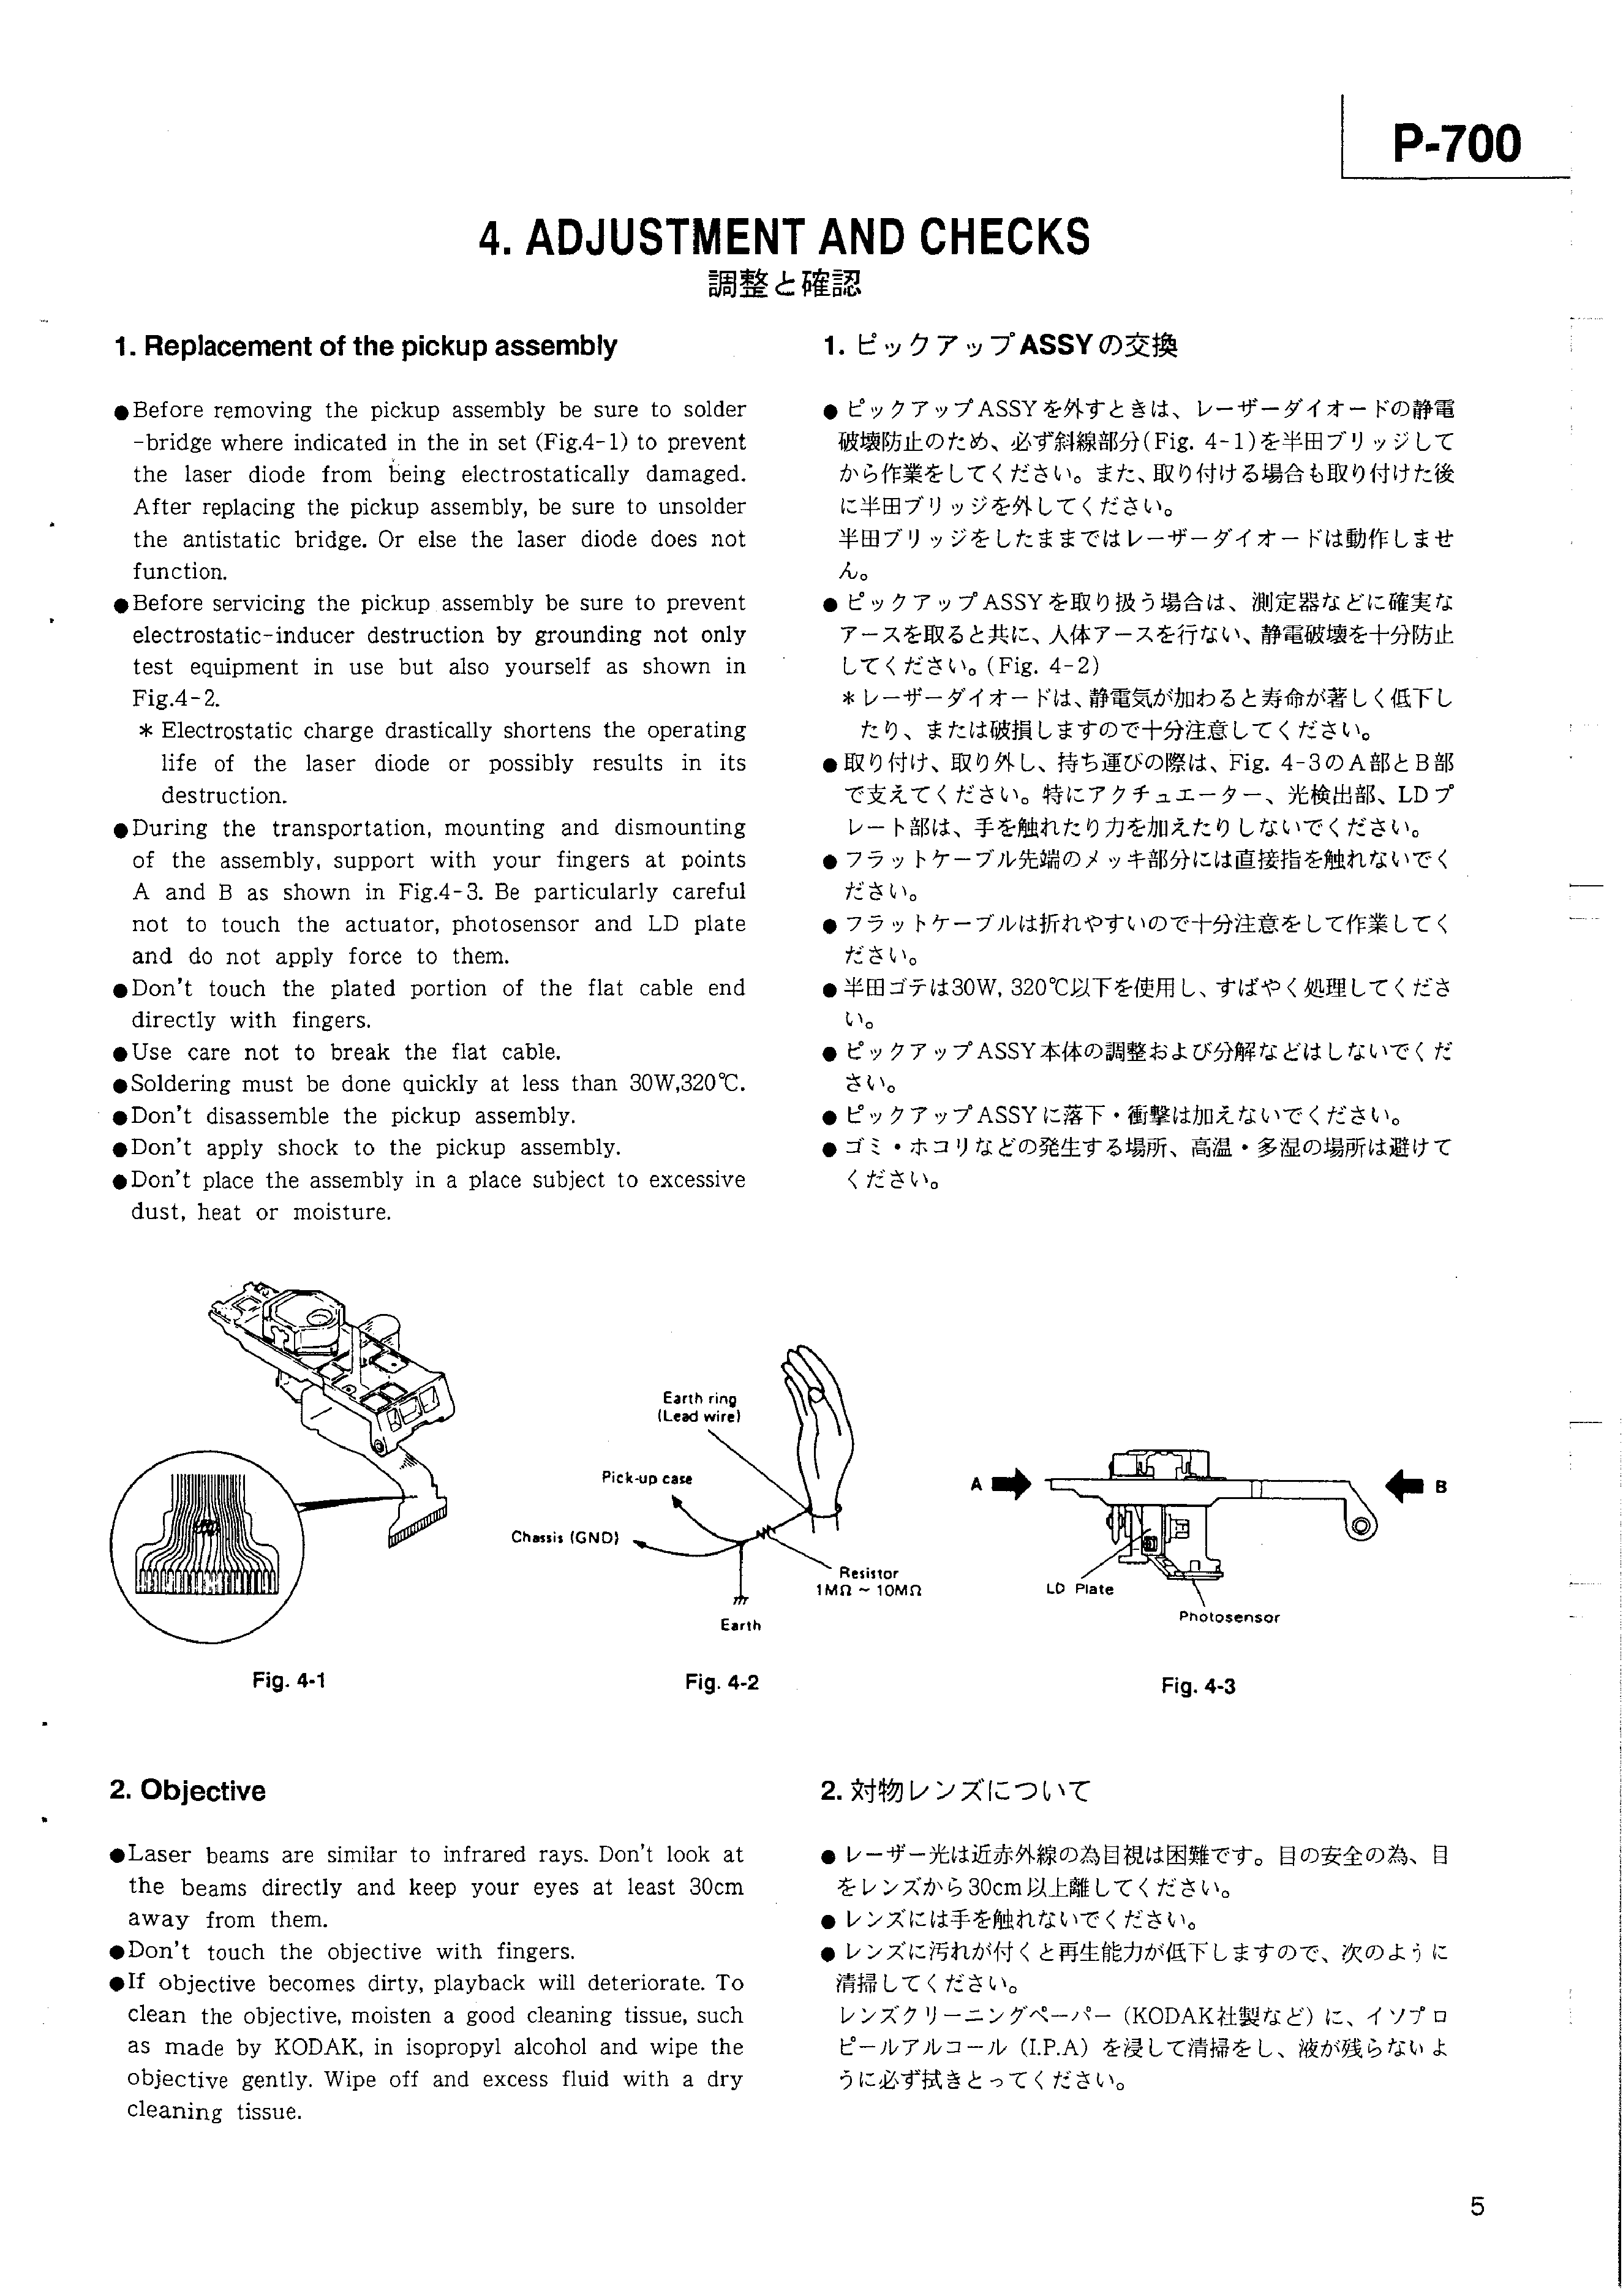 Service Manual-Anleitung für Teac P-700 